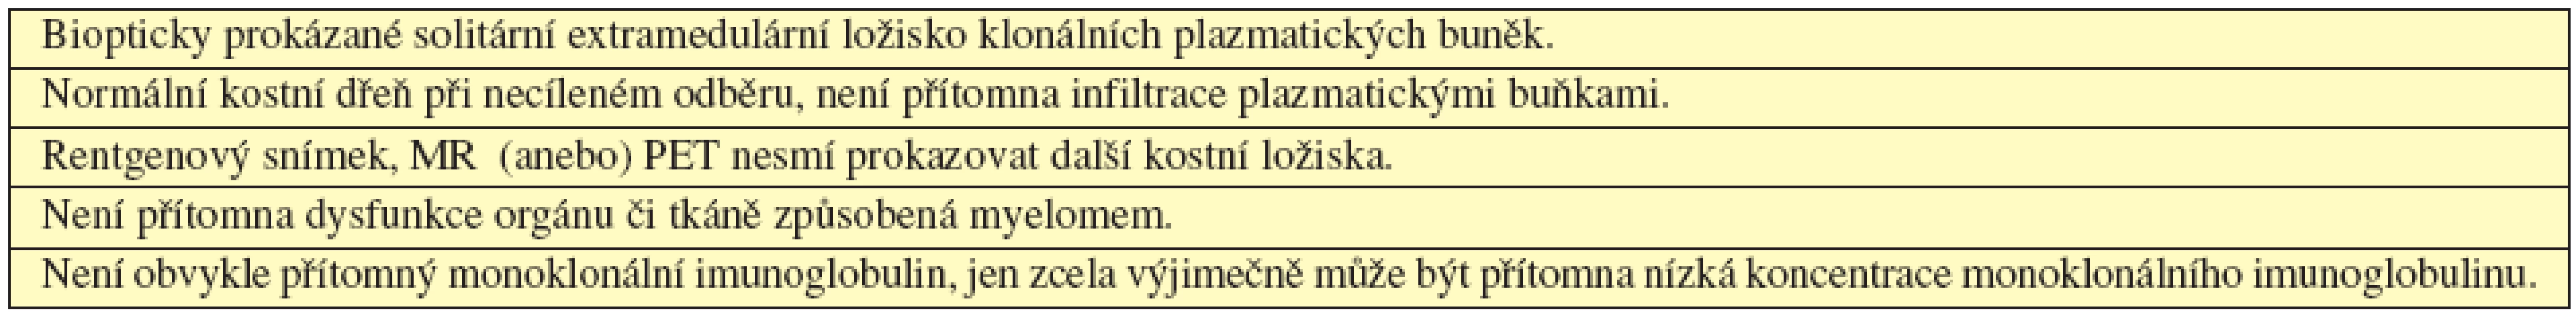 Kritéria solitárního mimokostního plazmocytomu (International Myeloma Working Group, 2003). 